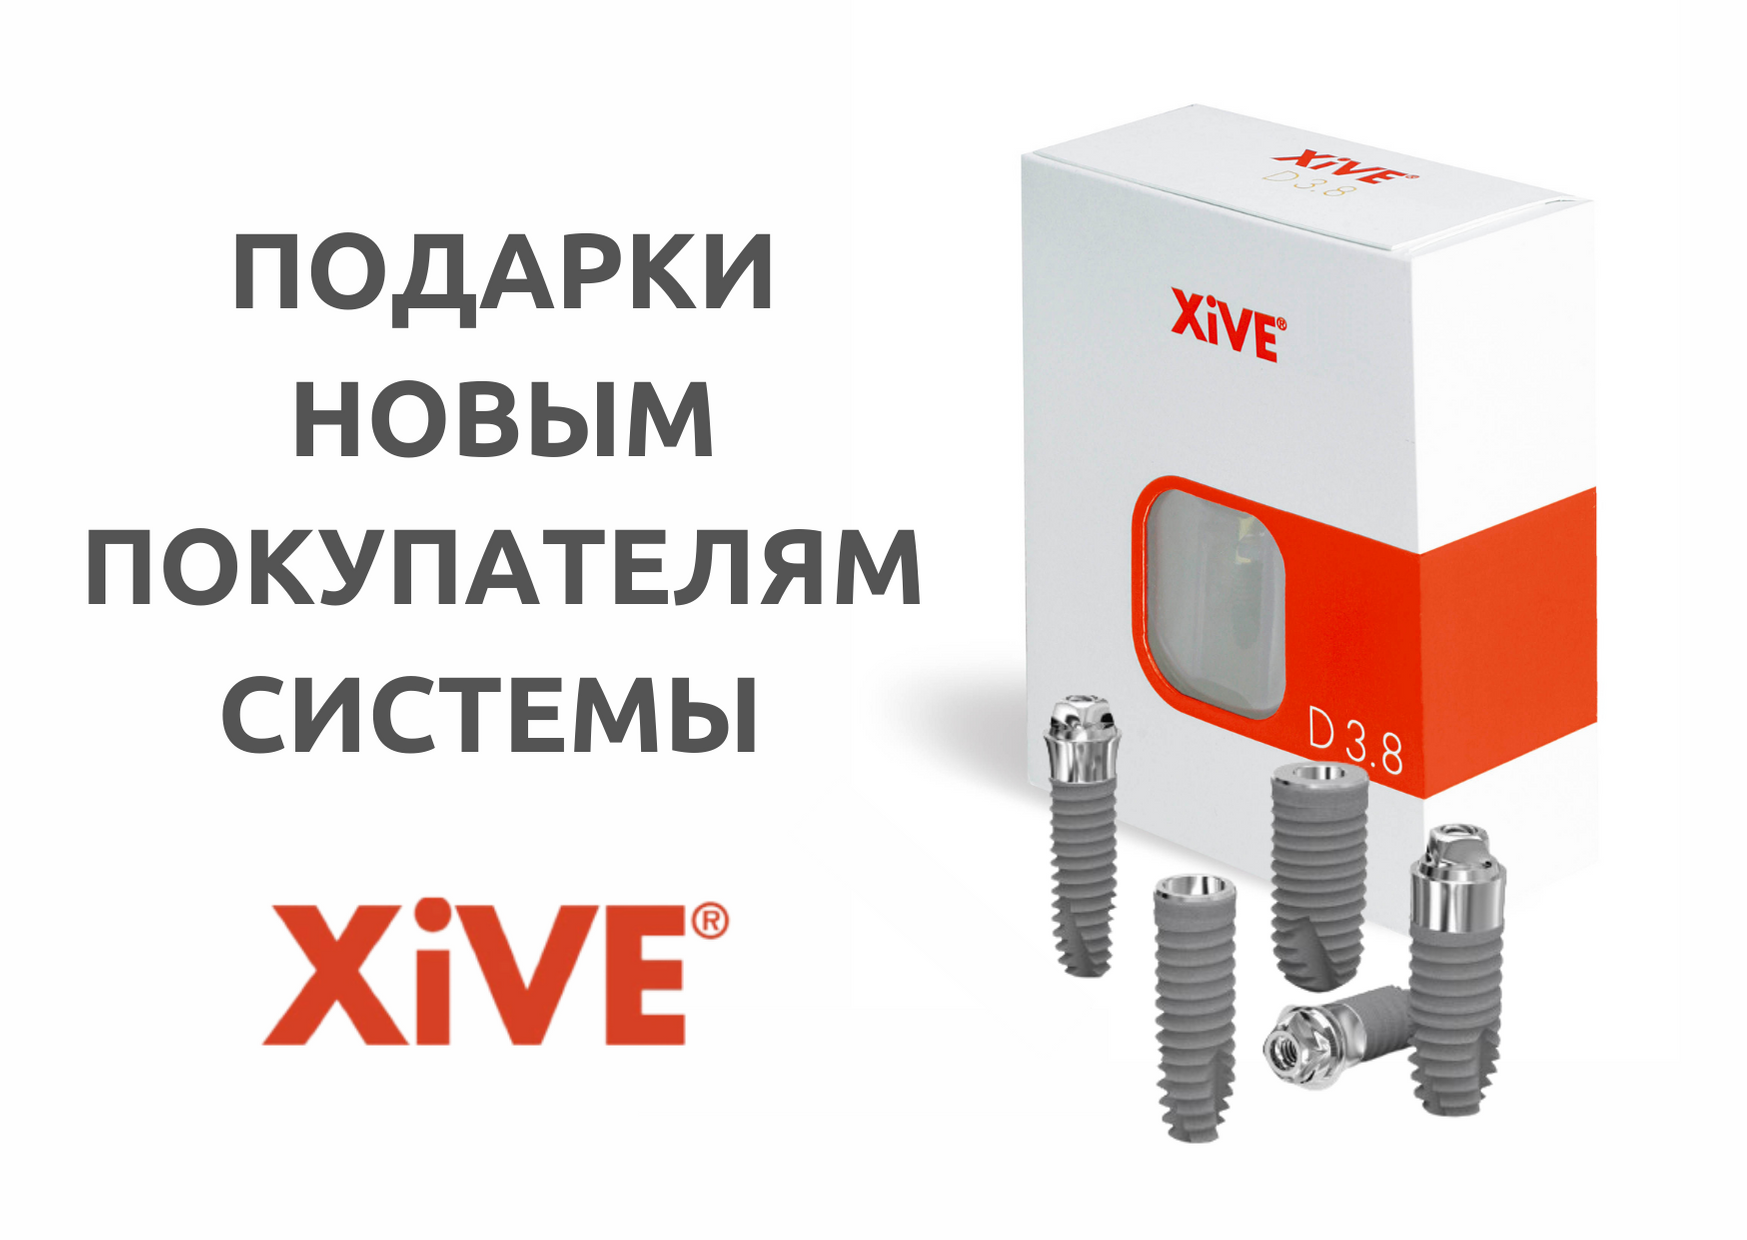 Предложение для новых покупателей системы XiVE